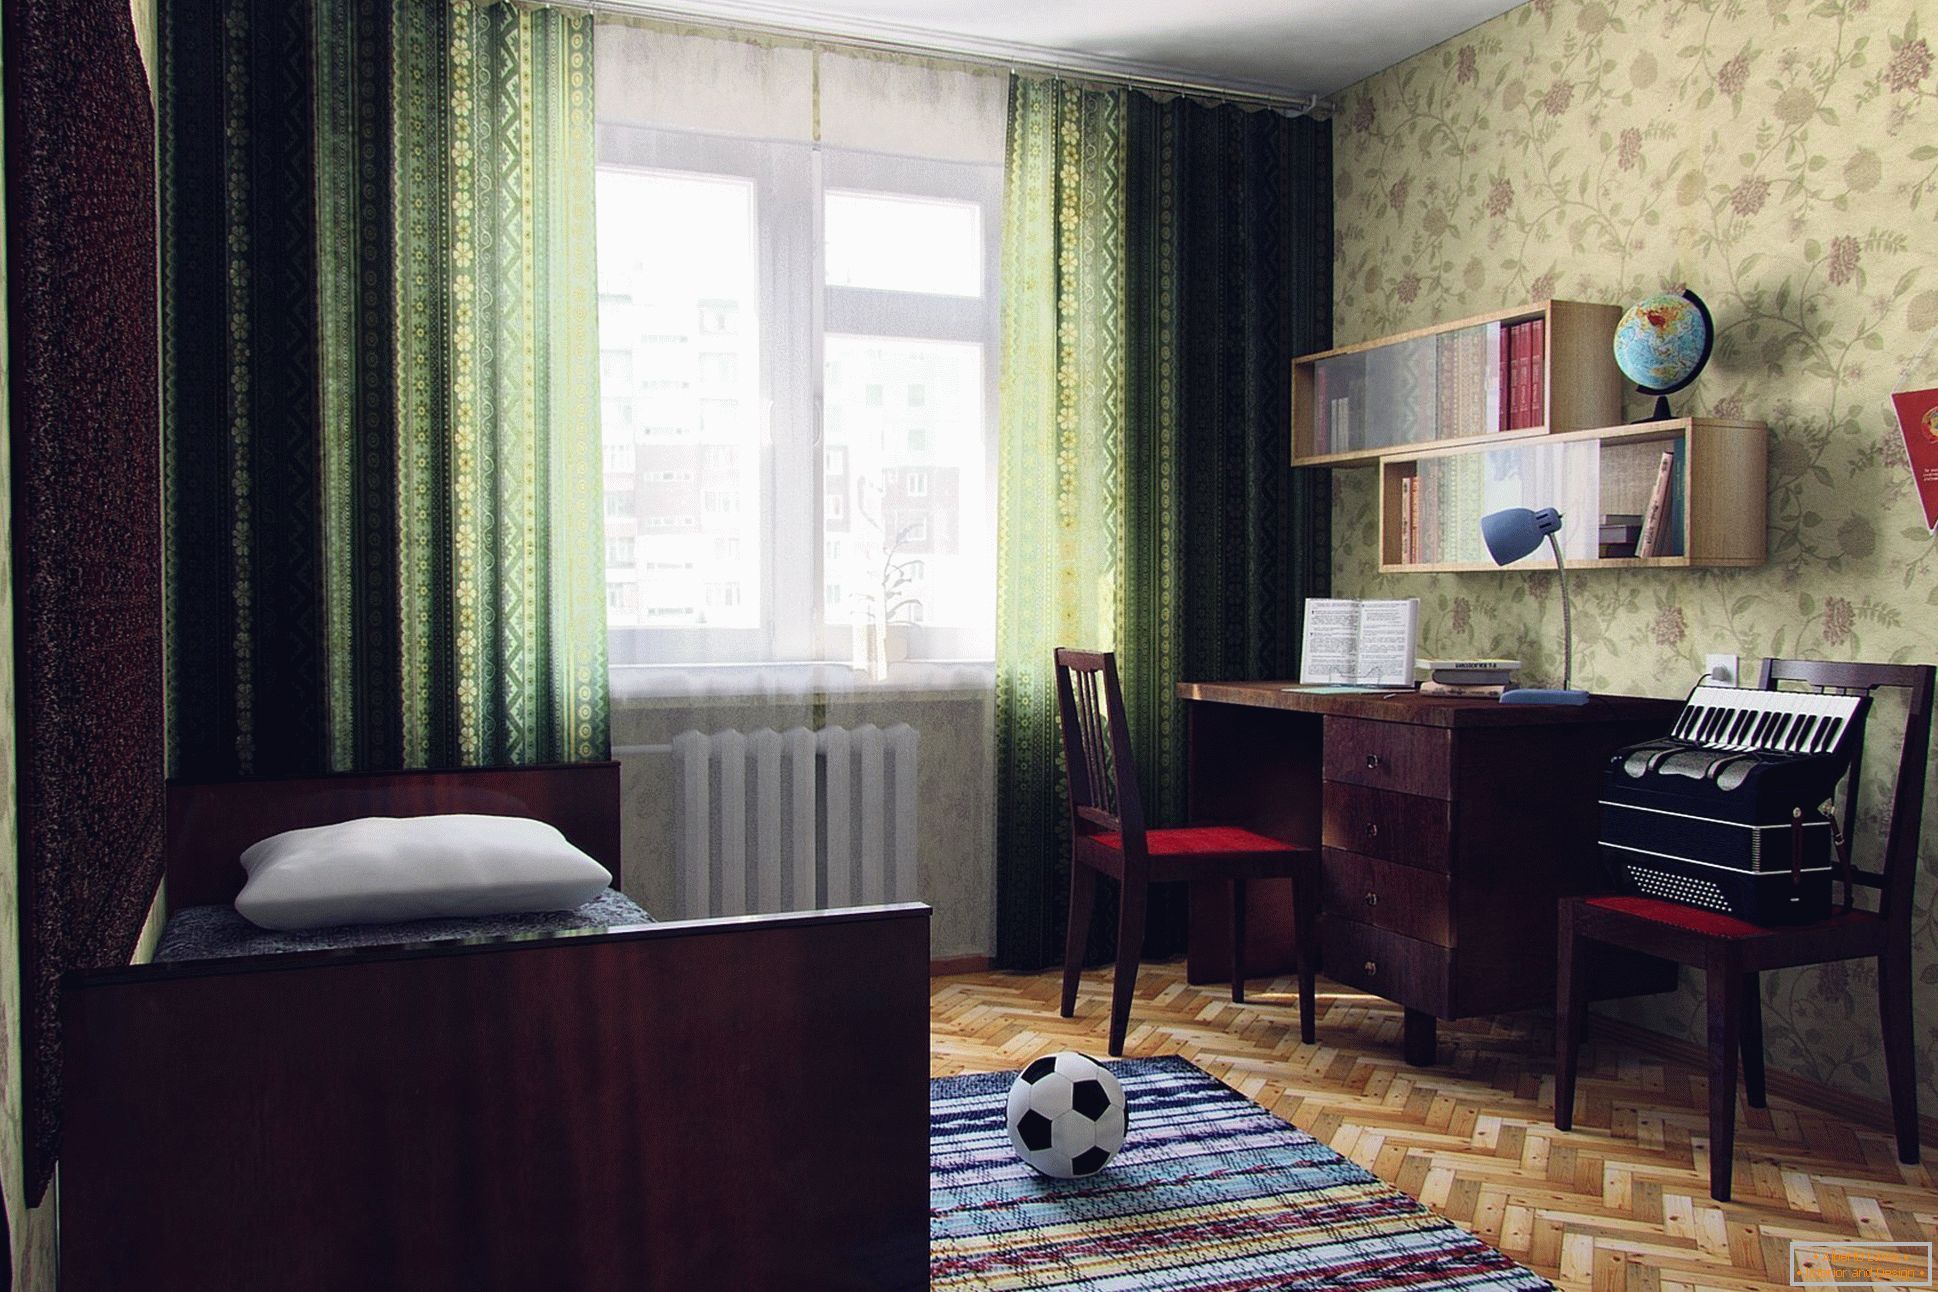 The Soviet bedroom